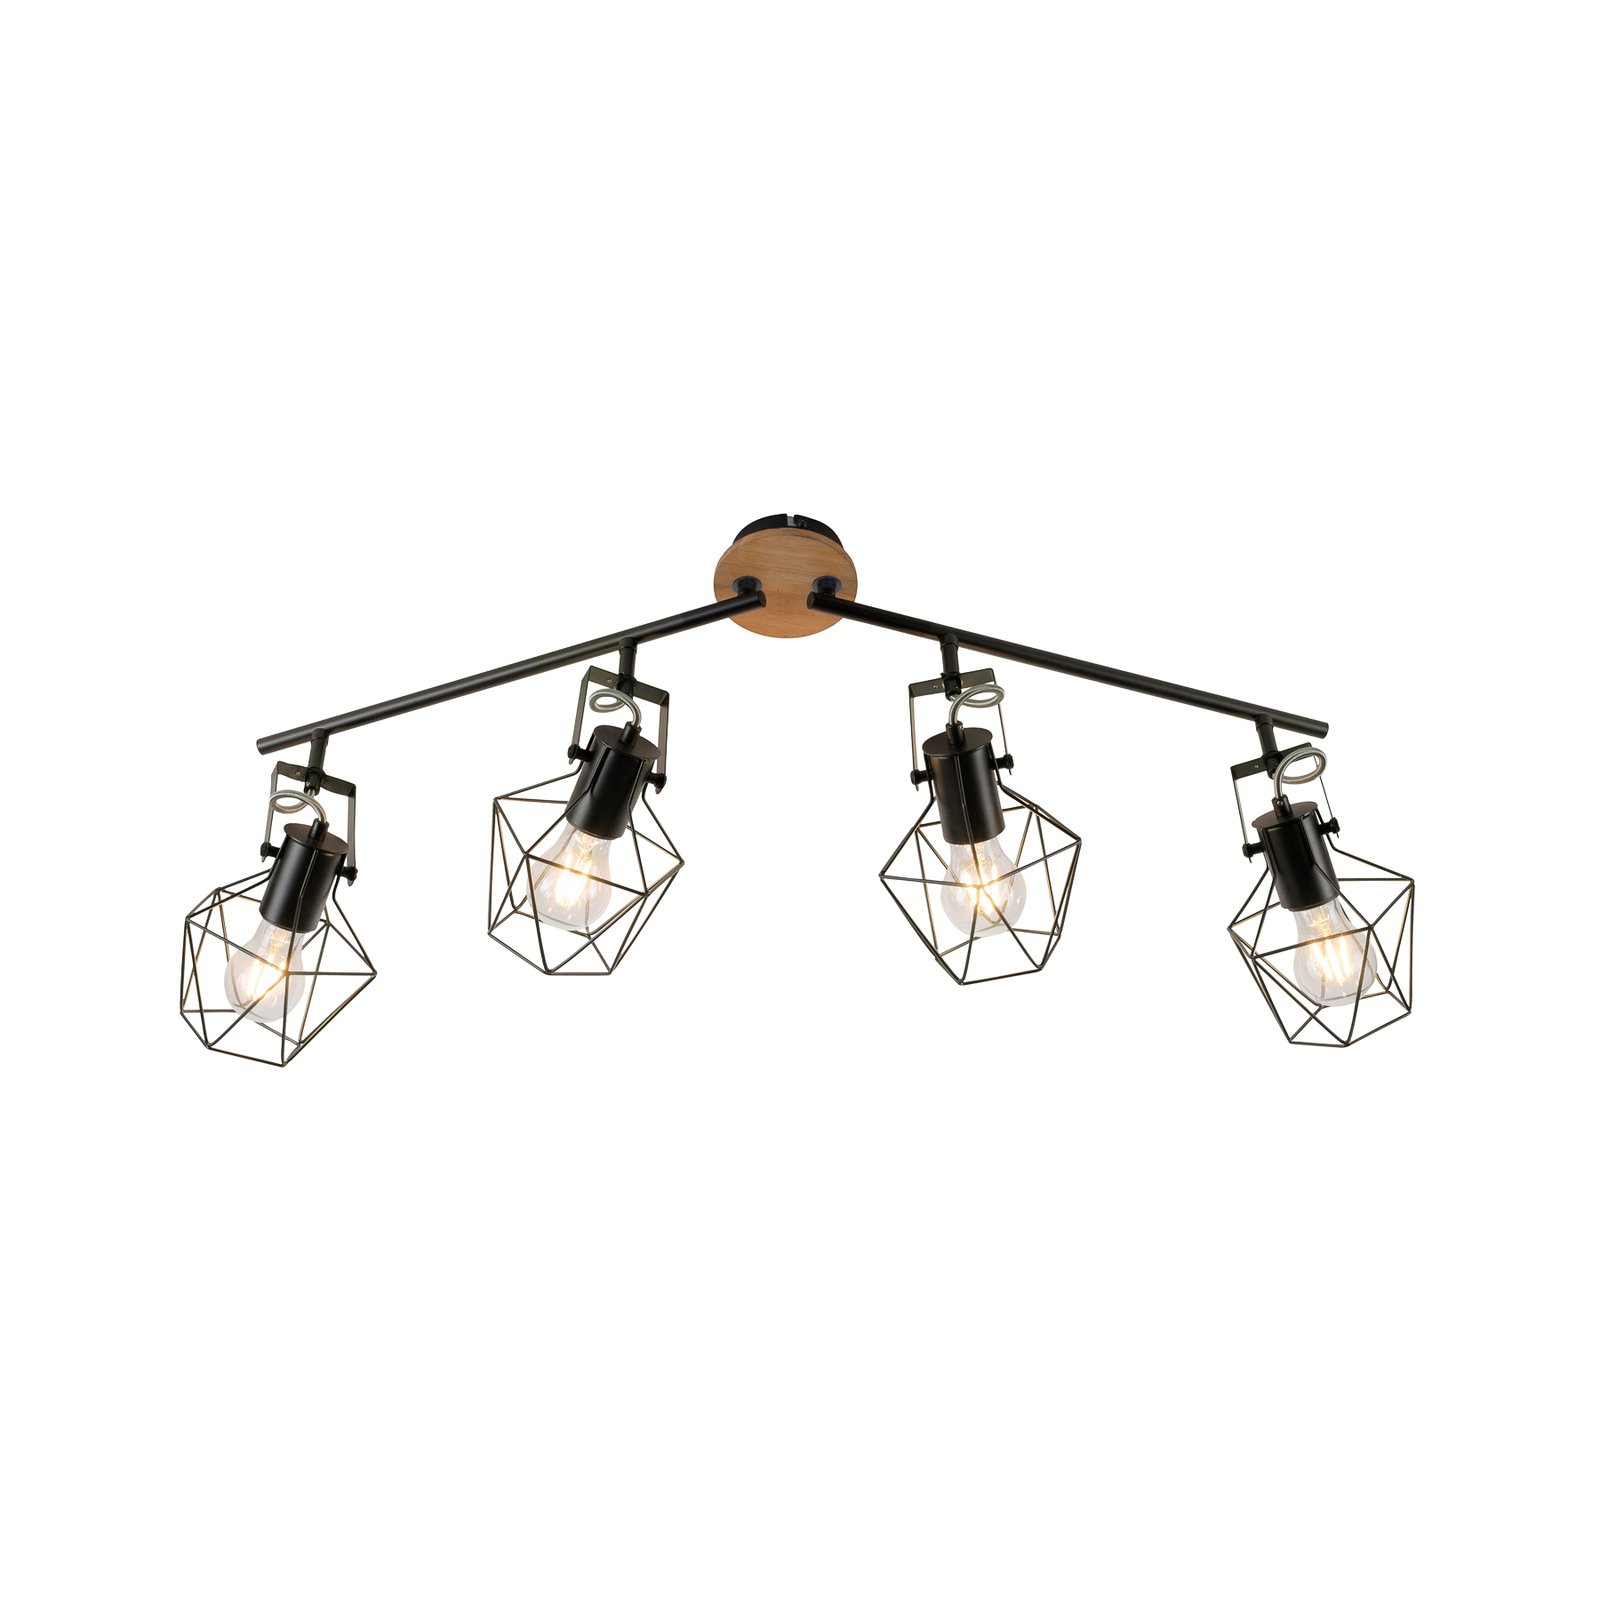 Ceiling lamp Jaro adjustable black/wood 4-bulb